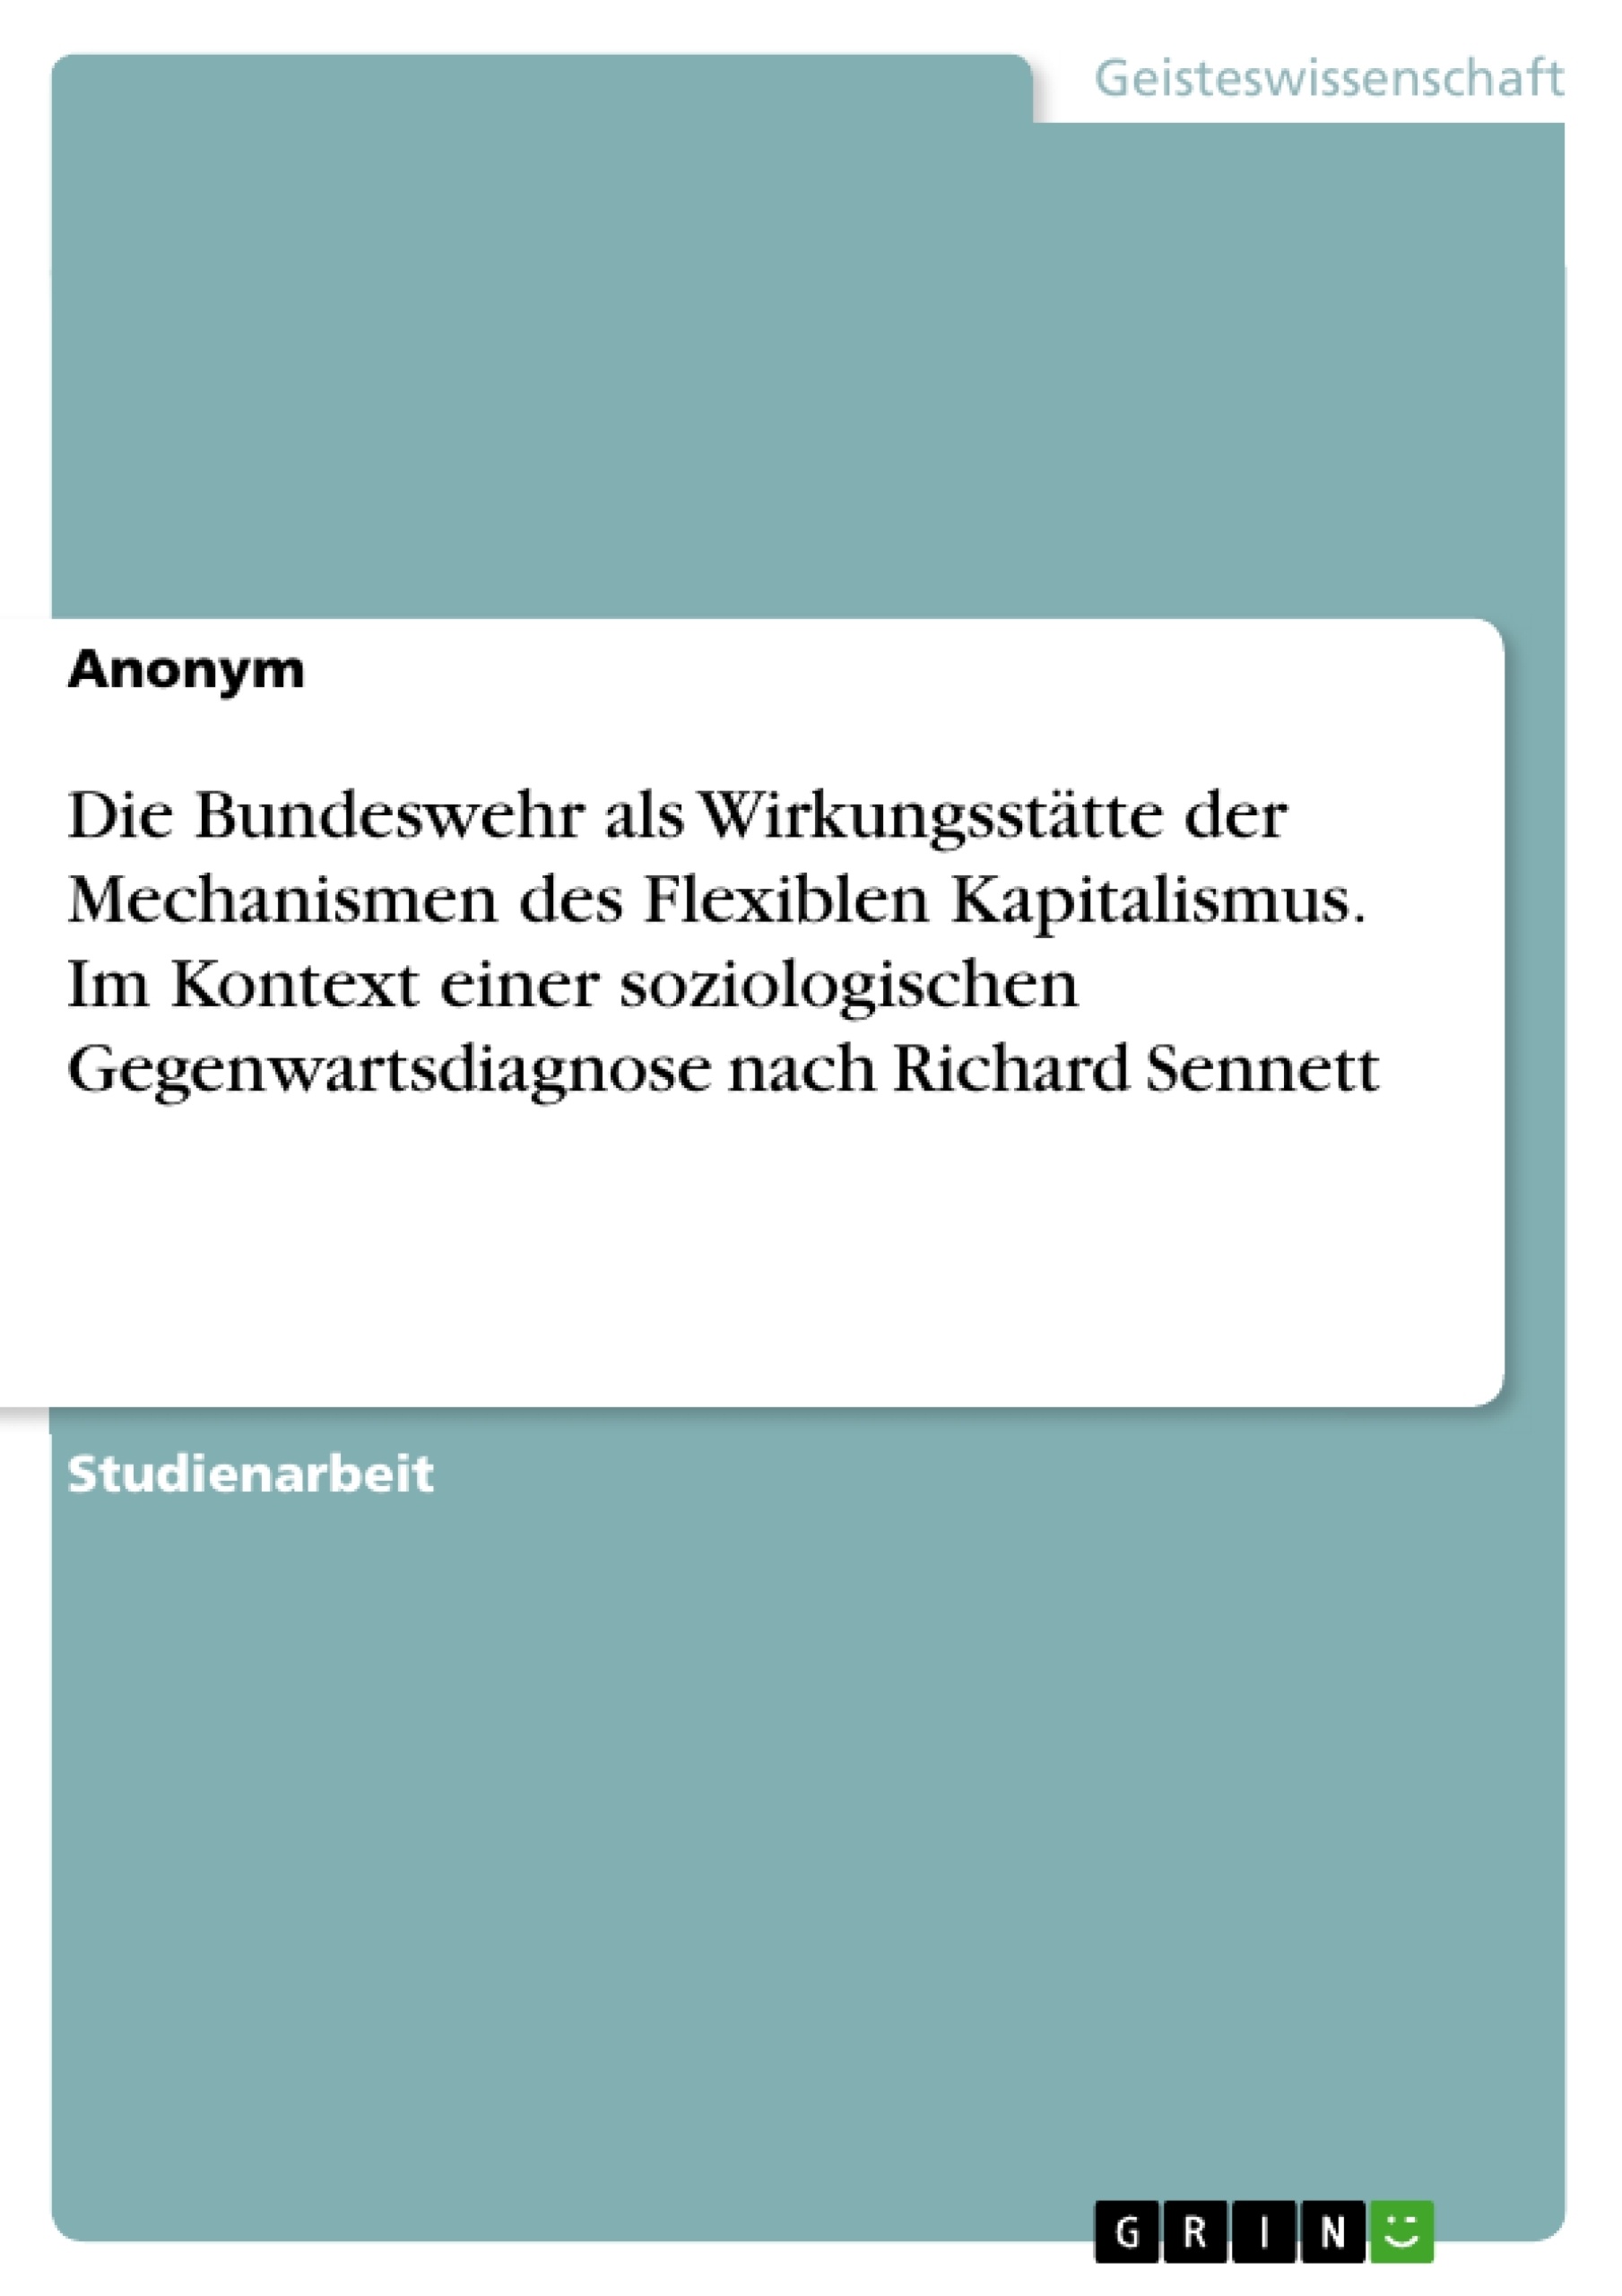 Title: Die Bundeswehr als Wirkungsstätte der Mechanismen des Flexiblen Kapitalismus. Im Kontext einer soziologischen Gegenwartsdiagnose nach Richard Sennett